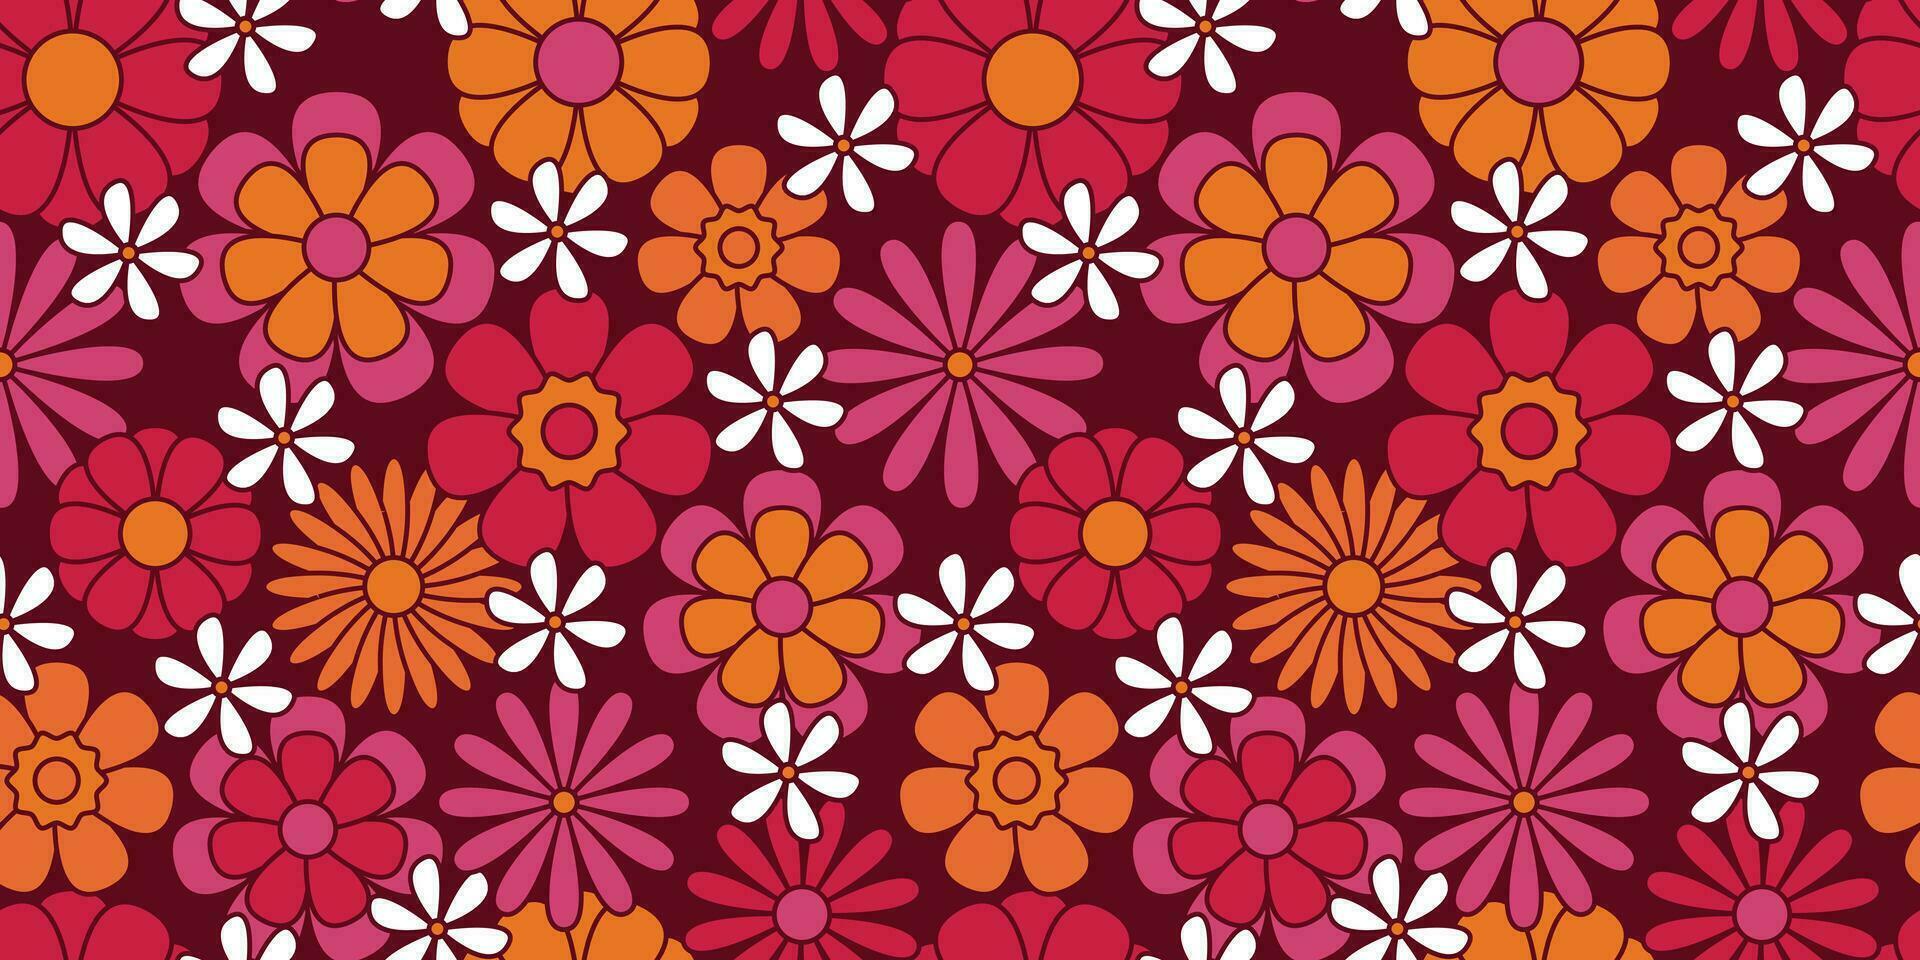 bunt groovig Blumen- nahtlos Muster. Hippie ästhetisch. komisch mehrfarbig drucken zum Stoff, Papier, irgendein Oberfläche Design. psychedelisch Hintergrund vektor